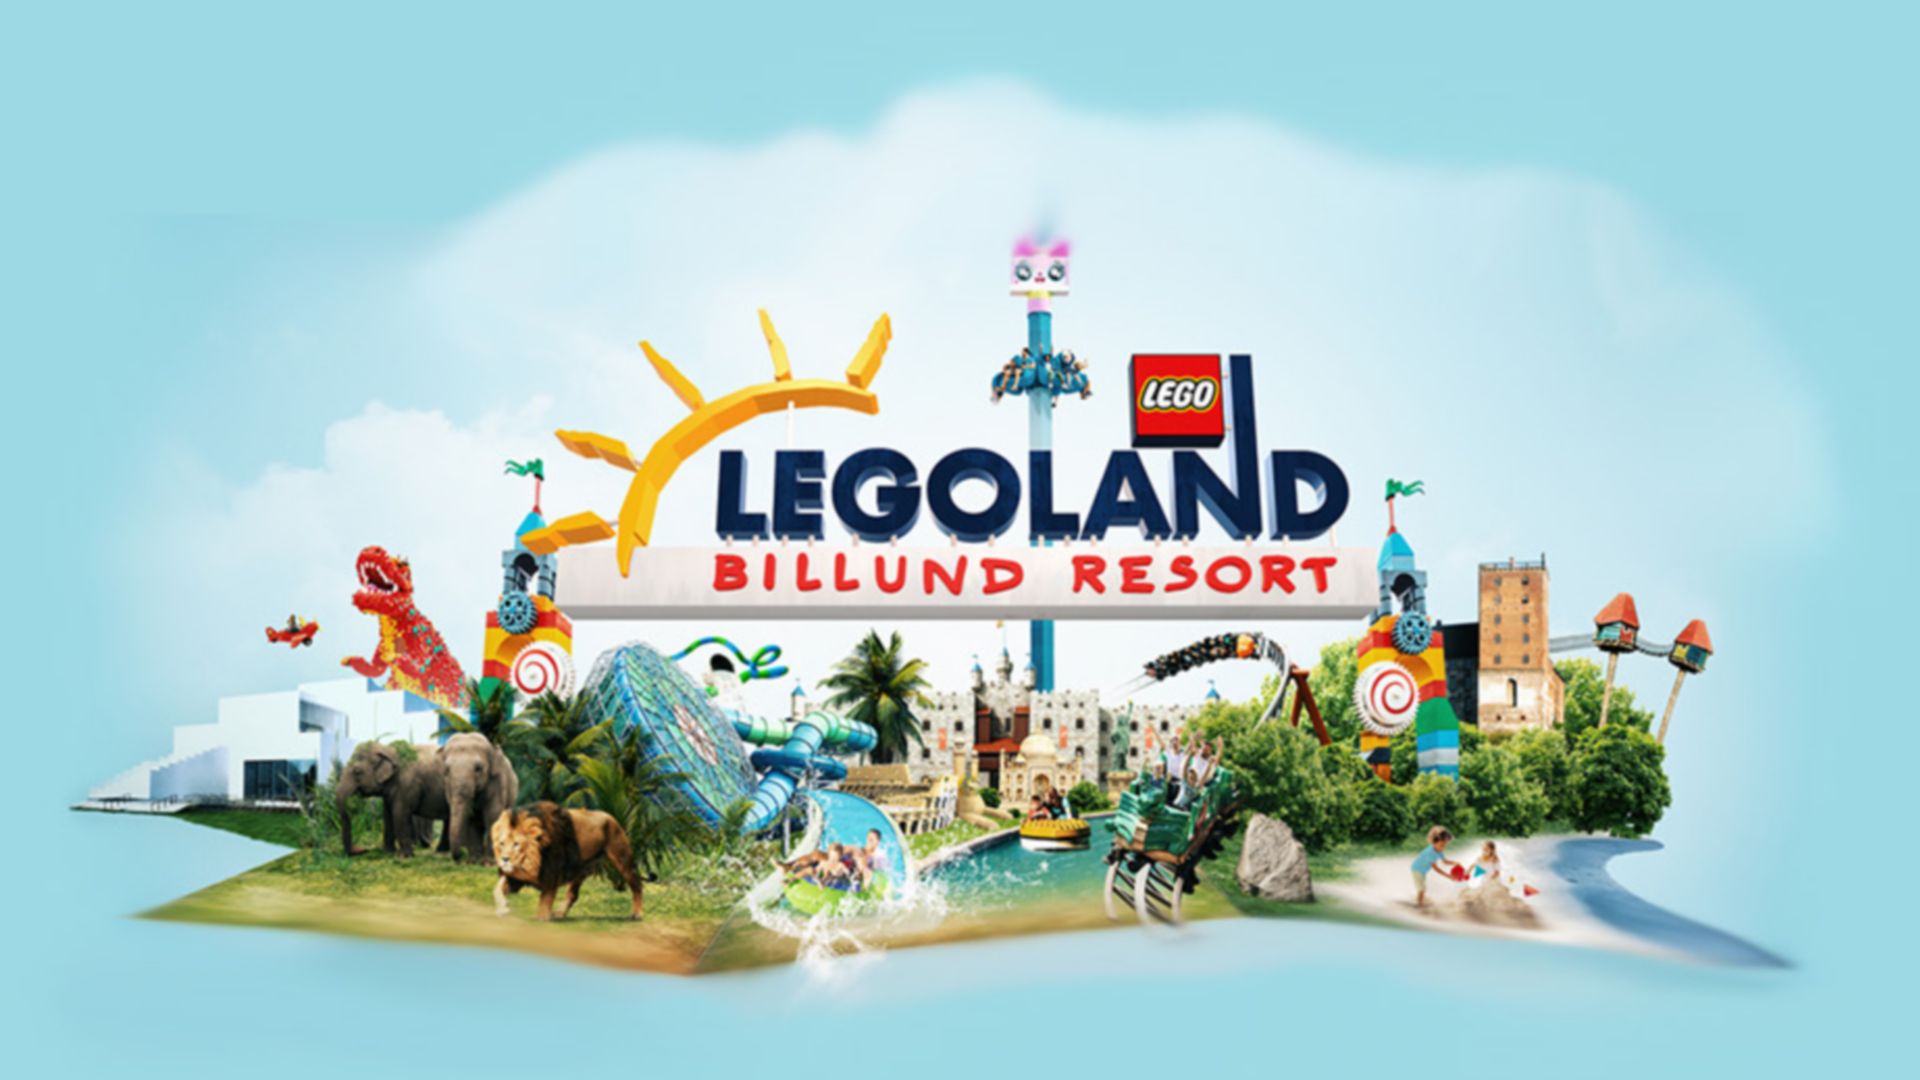 Legoland Billund Resort herojus reklama